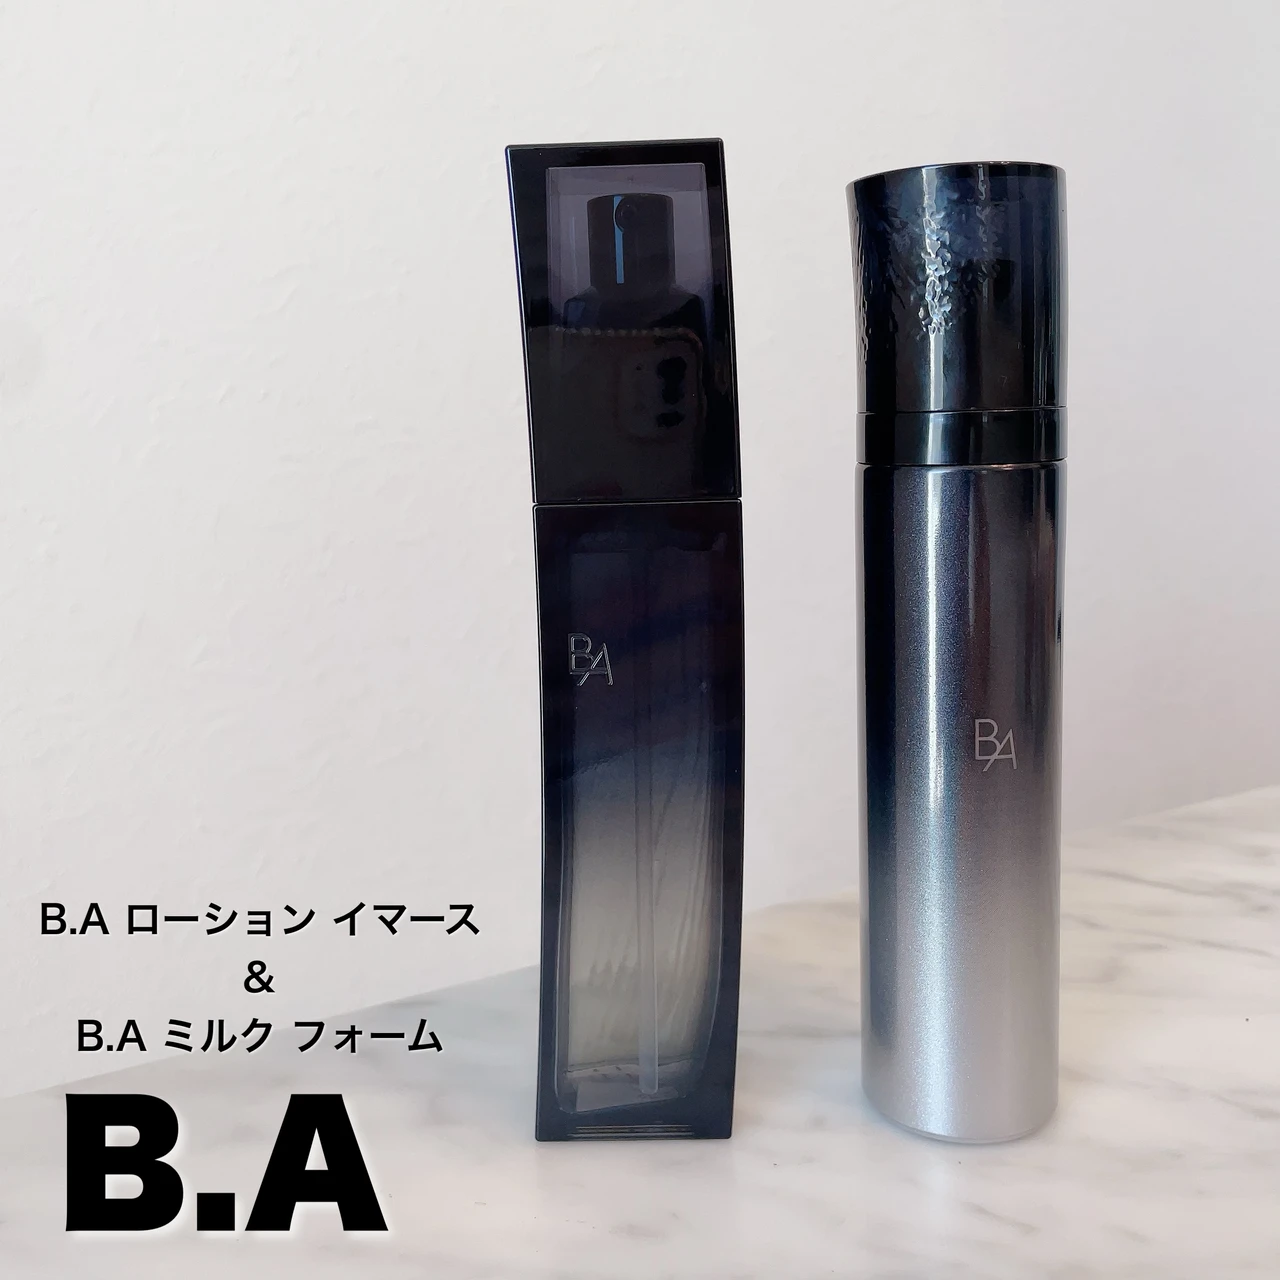 B.A／ B.A ローション イマース＆ B.A ミルク フォーム